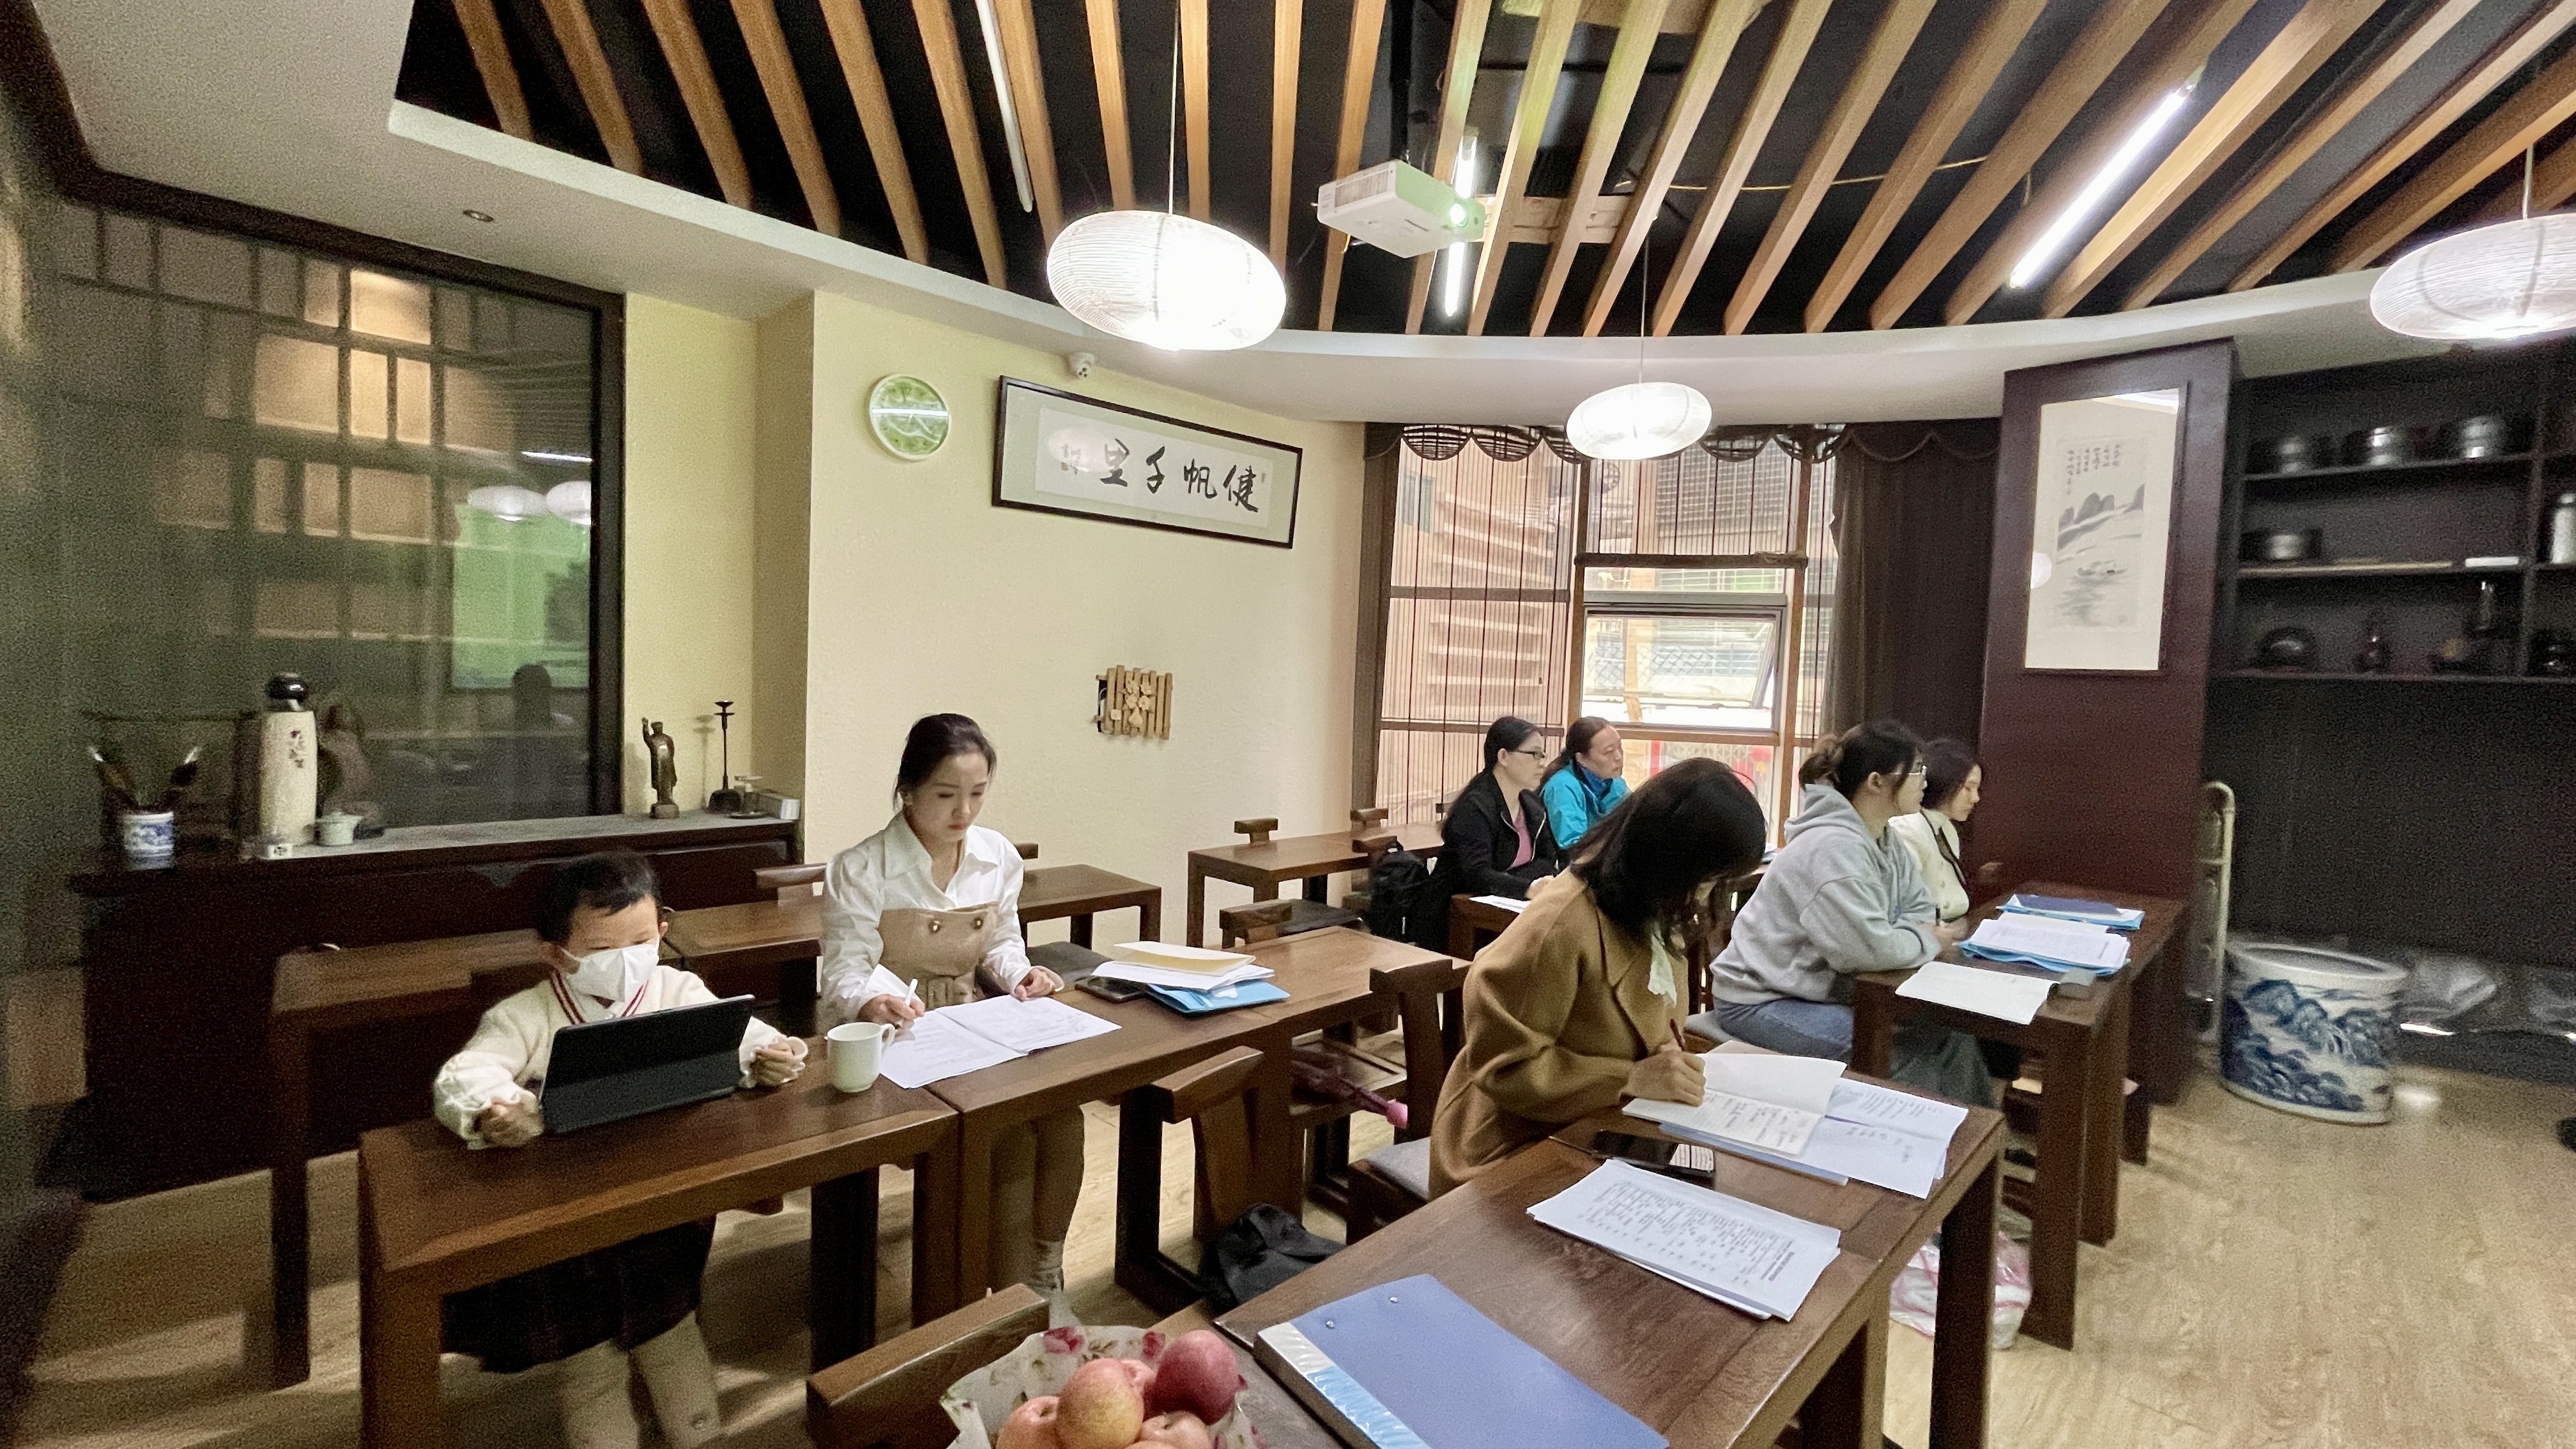 来自五省的茶艺培训学员学习态度值得学习